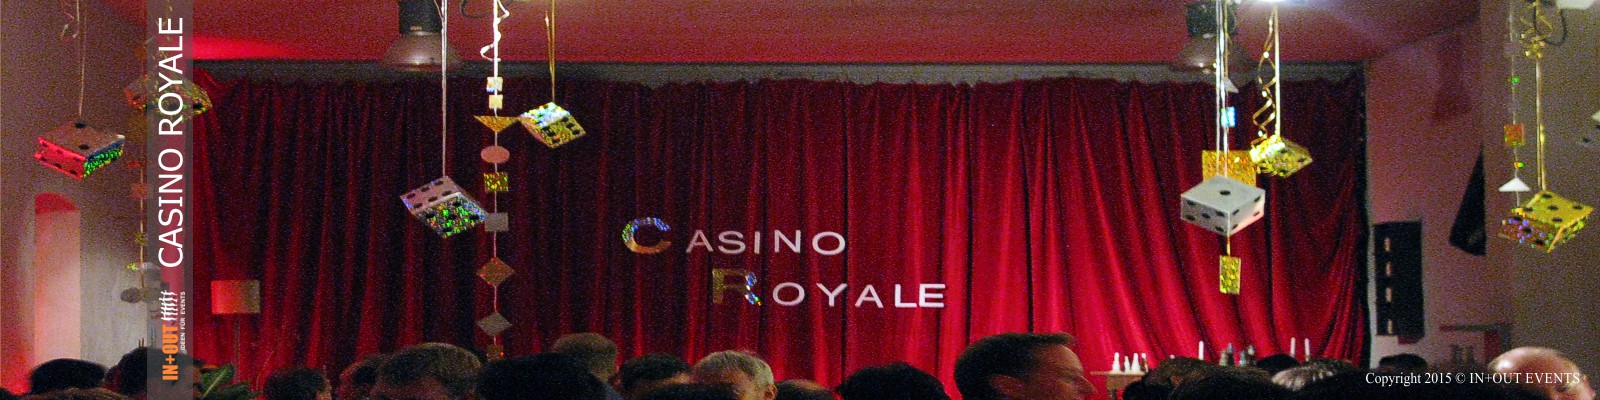 Weihnachtsfeier Event Casino Royale